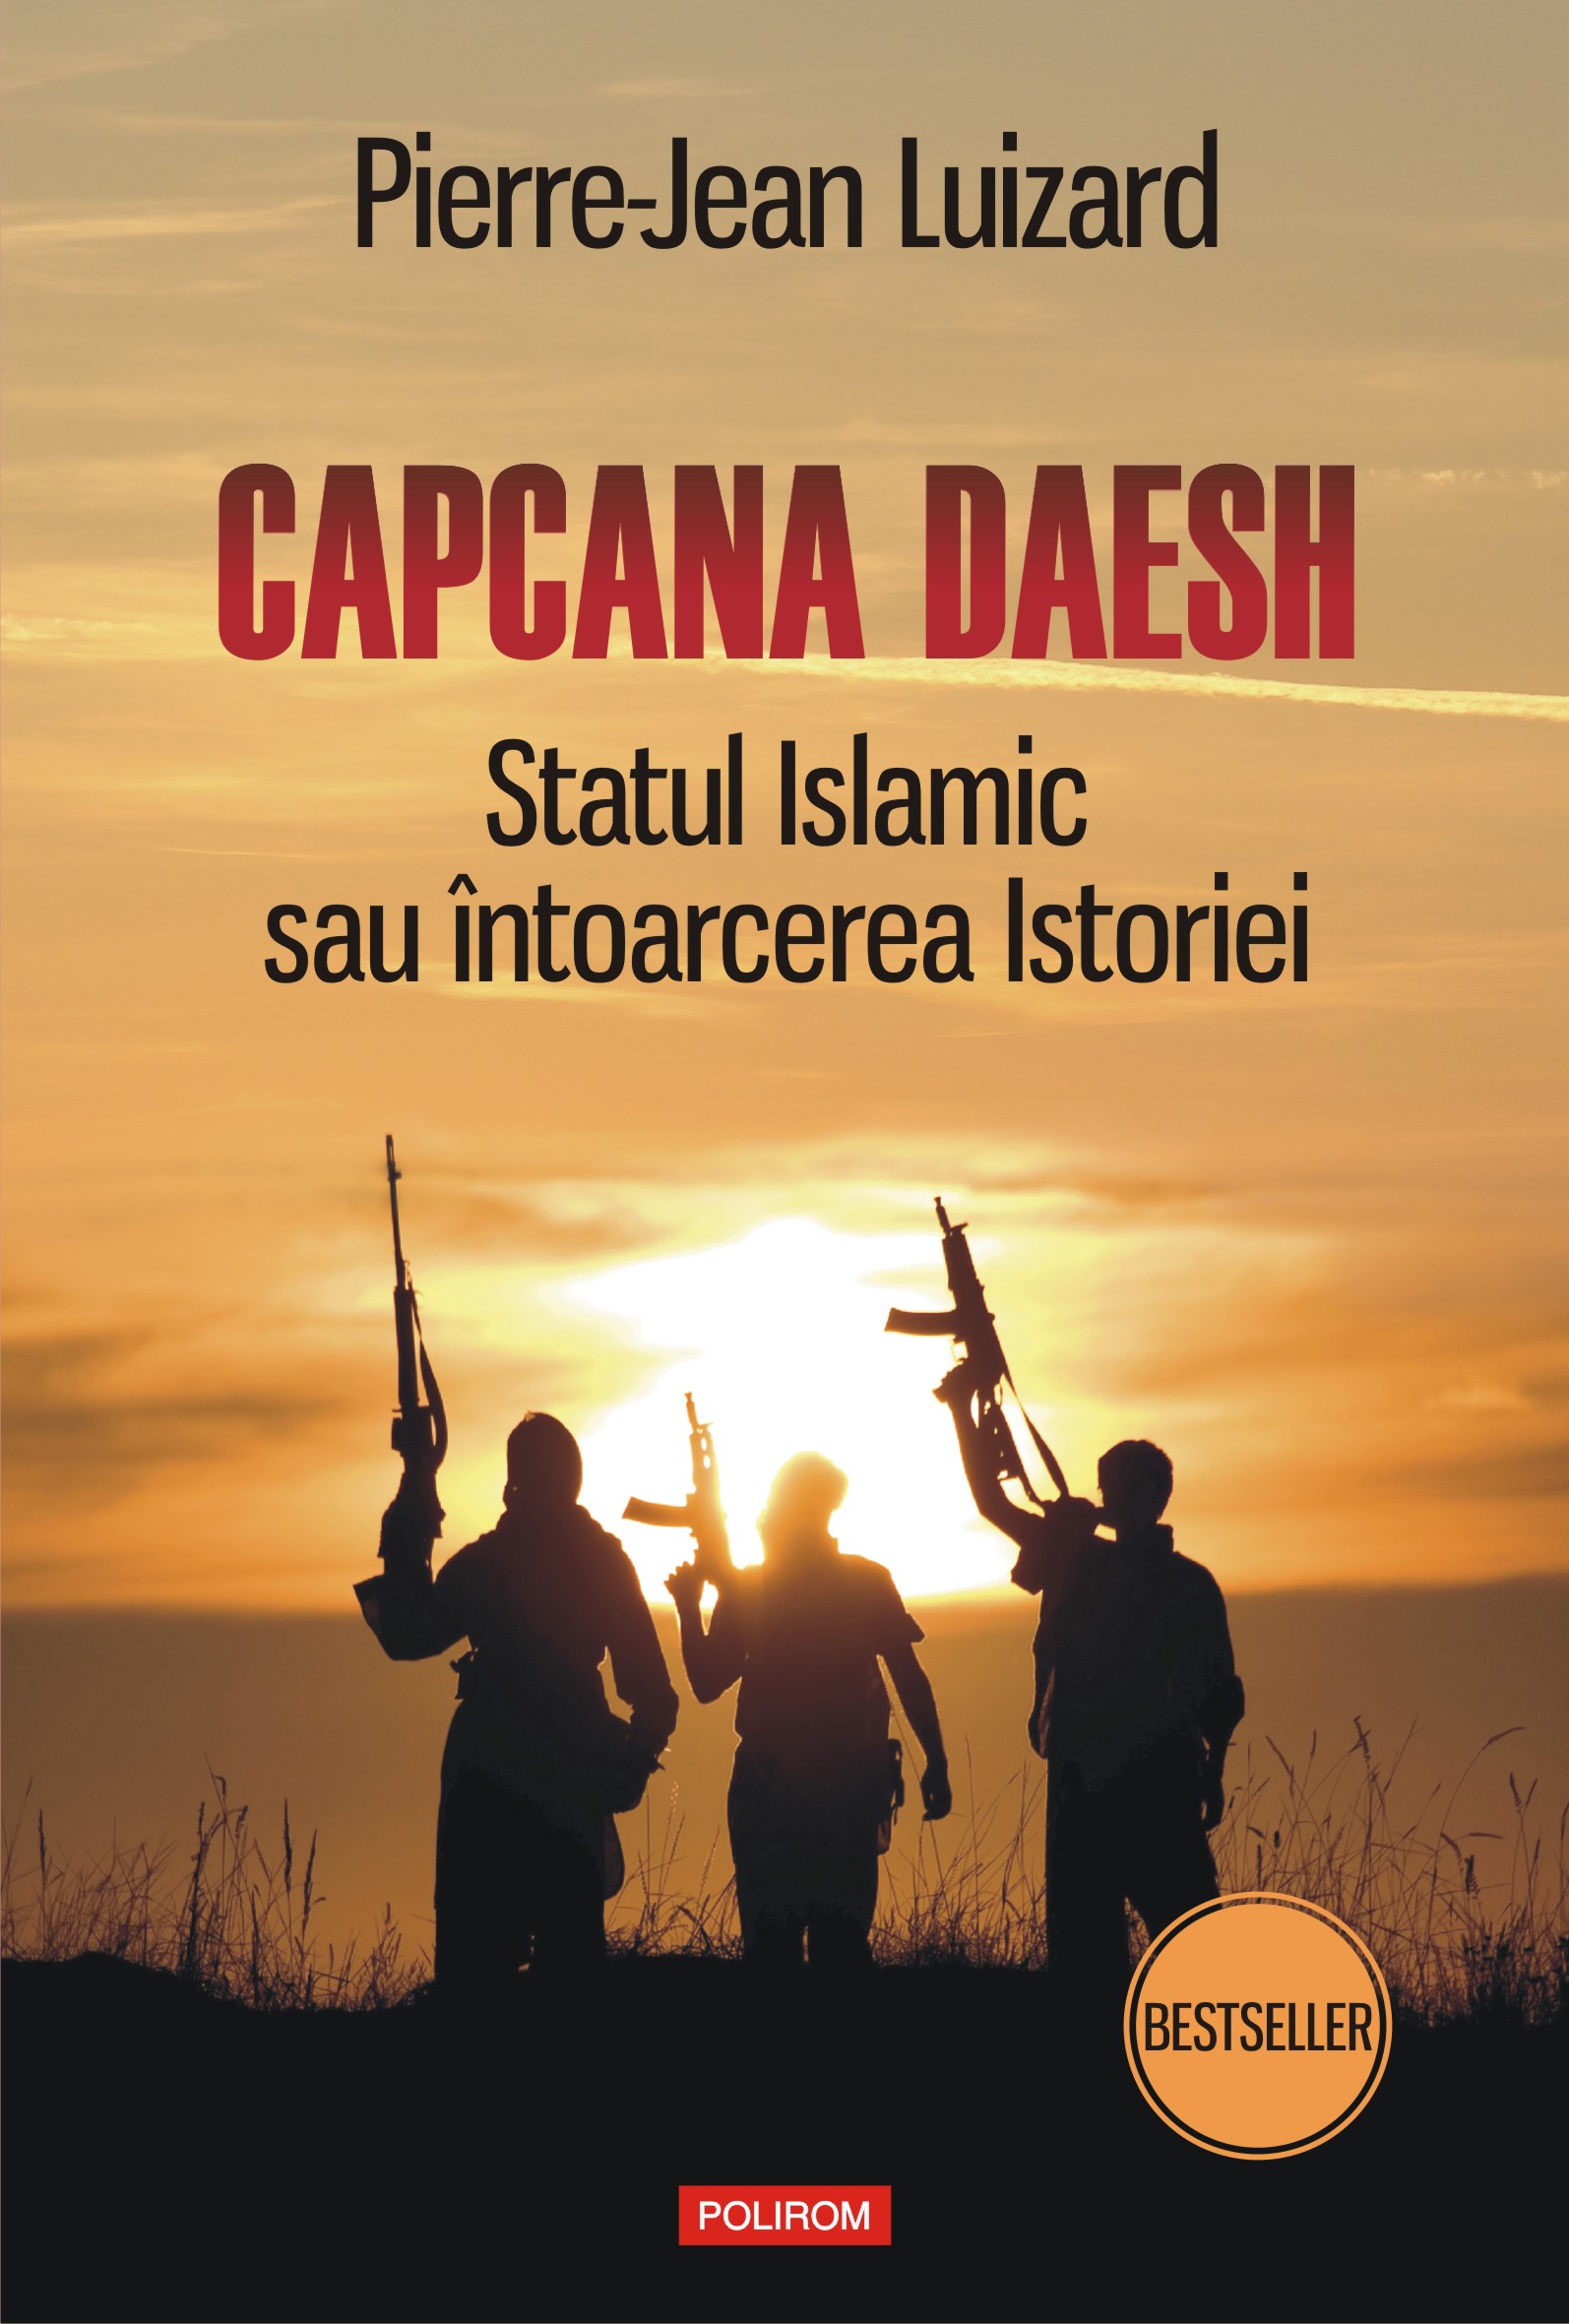 eBook Capcana Daesh. Statul Islamic sau intoarcerea Istoriei - Pierre-Jean Luizard